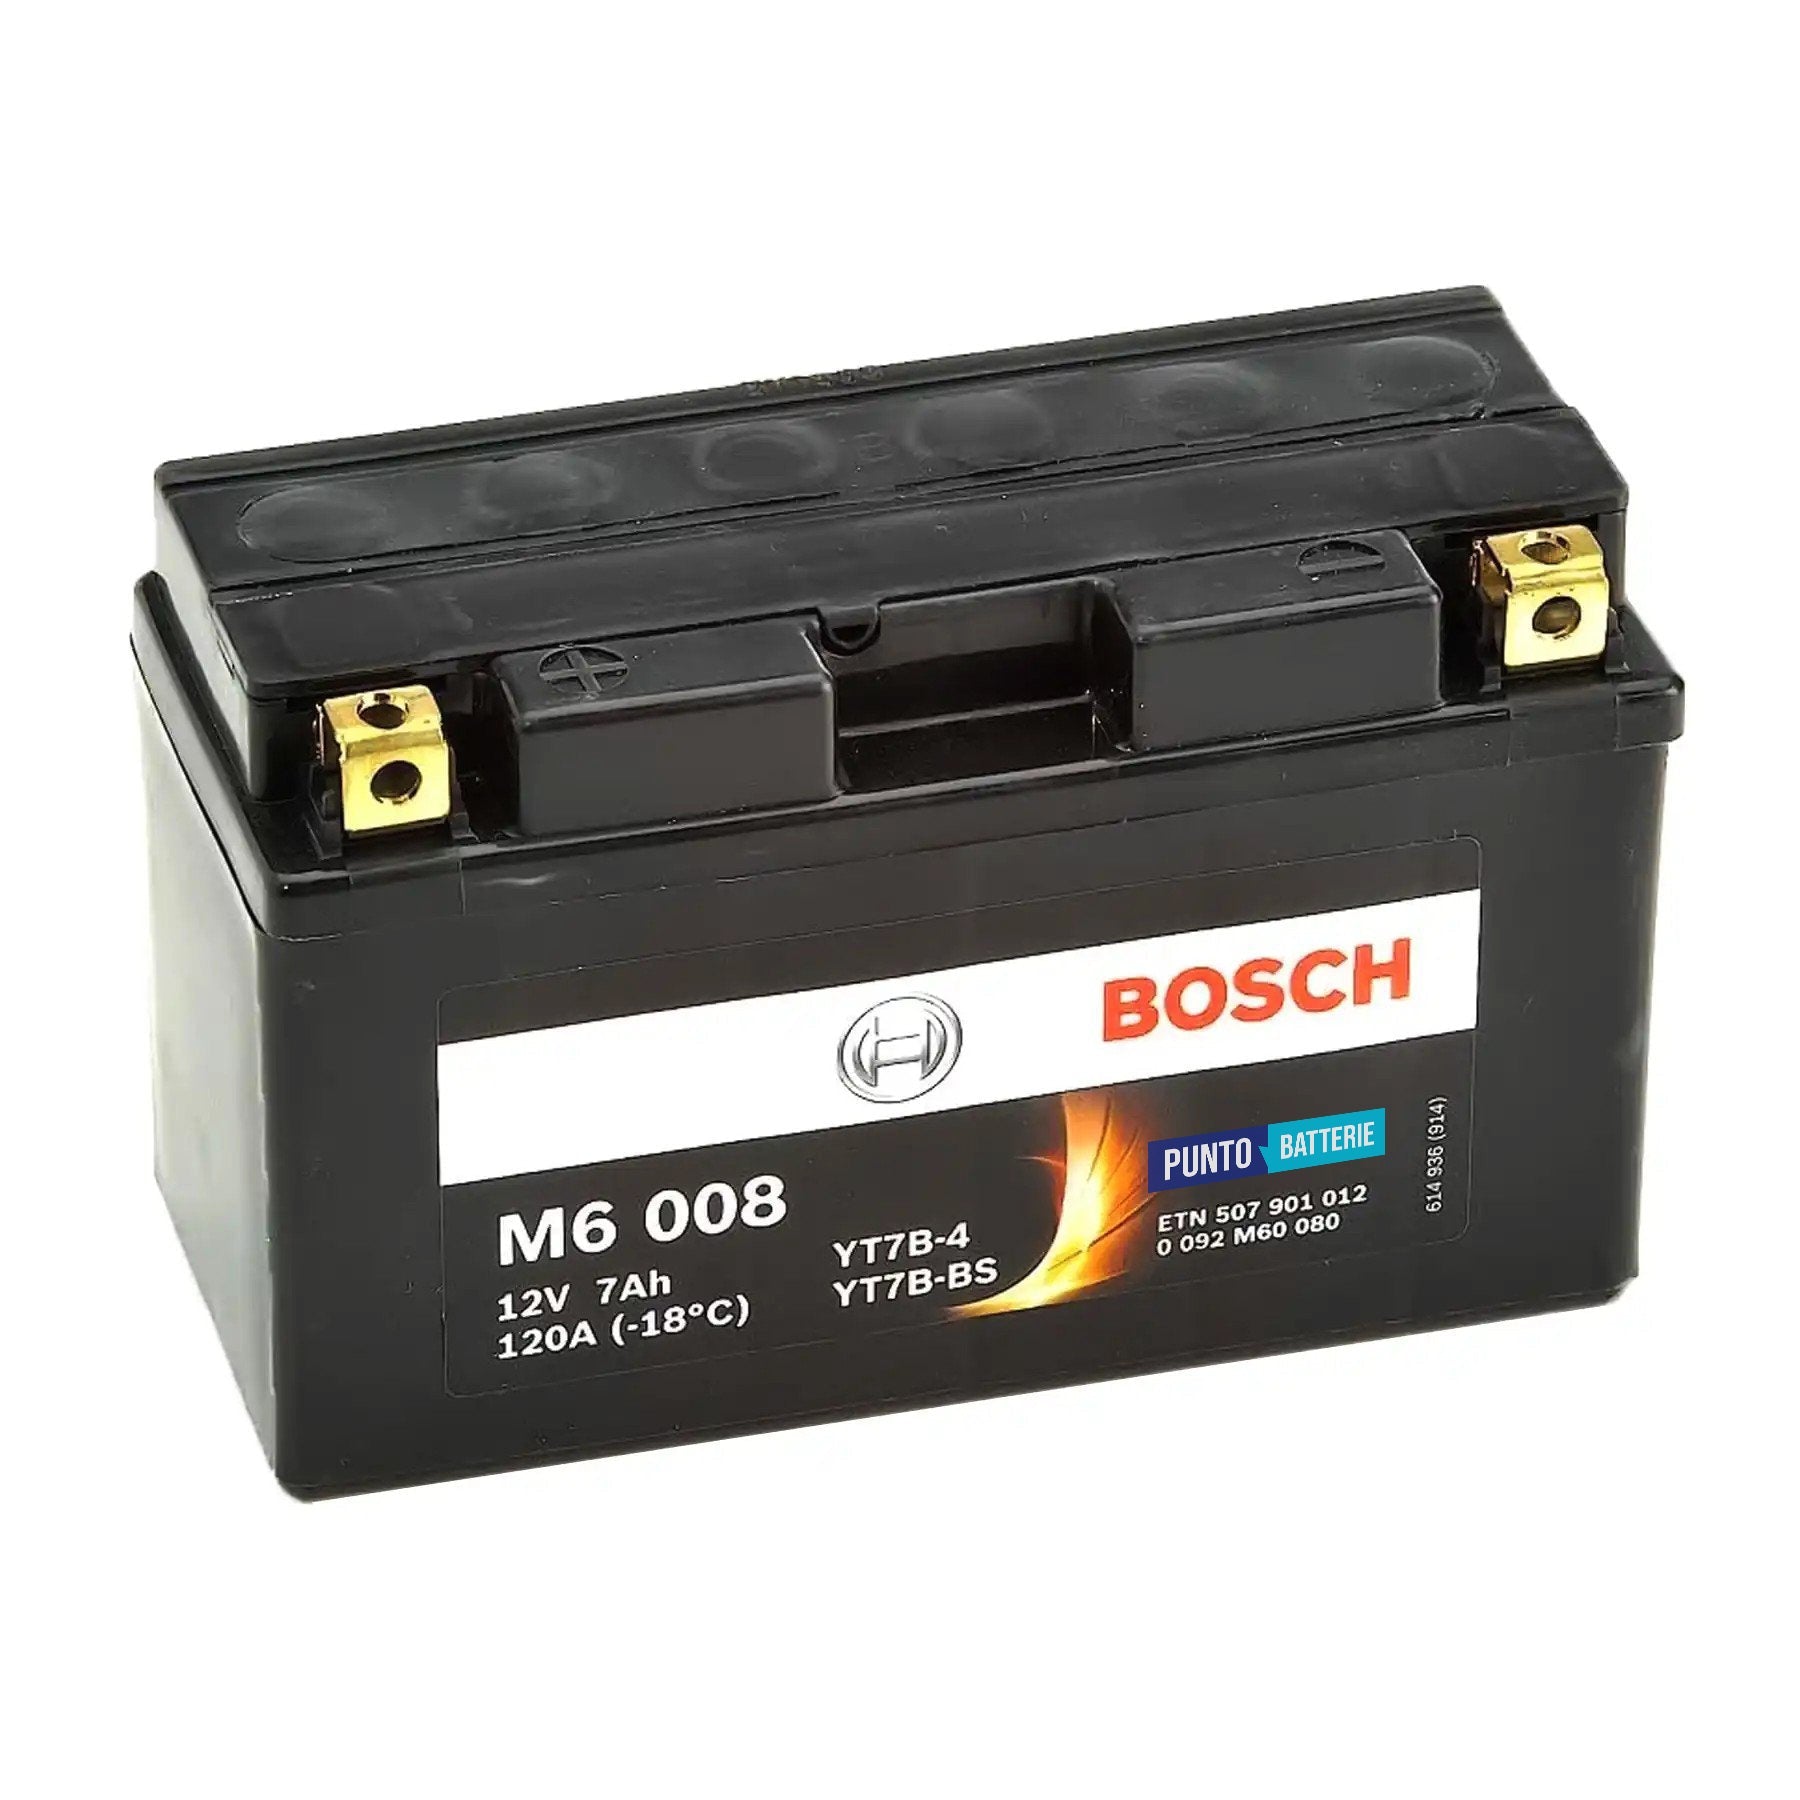 Batteria originale Bosch M6 M6008, dimensioni 150 x 65 x 93, polo positivo a sinistra, 12 volt, 7 amperora, 120 ampere. Batteria per moto, scooter e powersport.